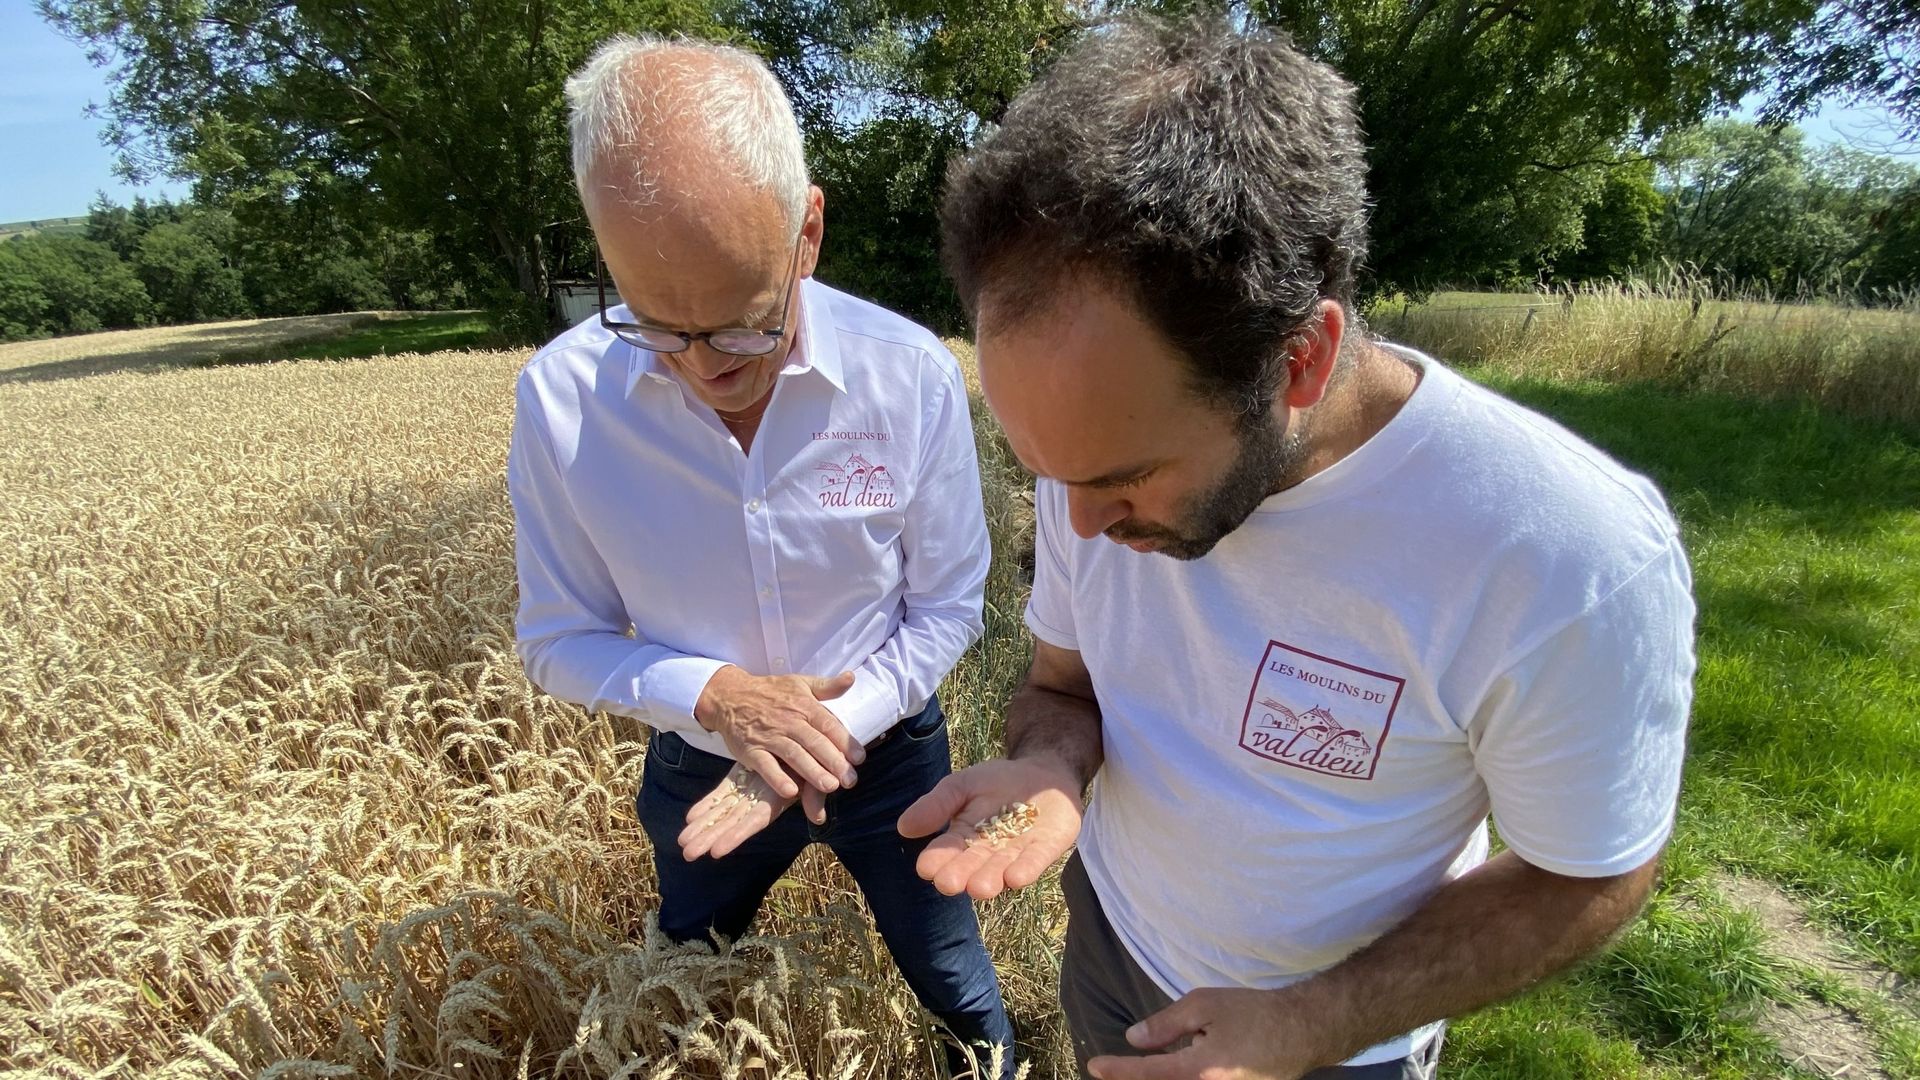 Benoît Brouwers et Benoît Thyberghein, les deux patrons des "Moulins du Val Dieu" testent une dernière fois les grains ; le temps chaud les a bien fait mûrir. Bientôt la première récolte !